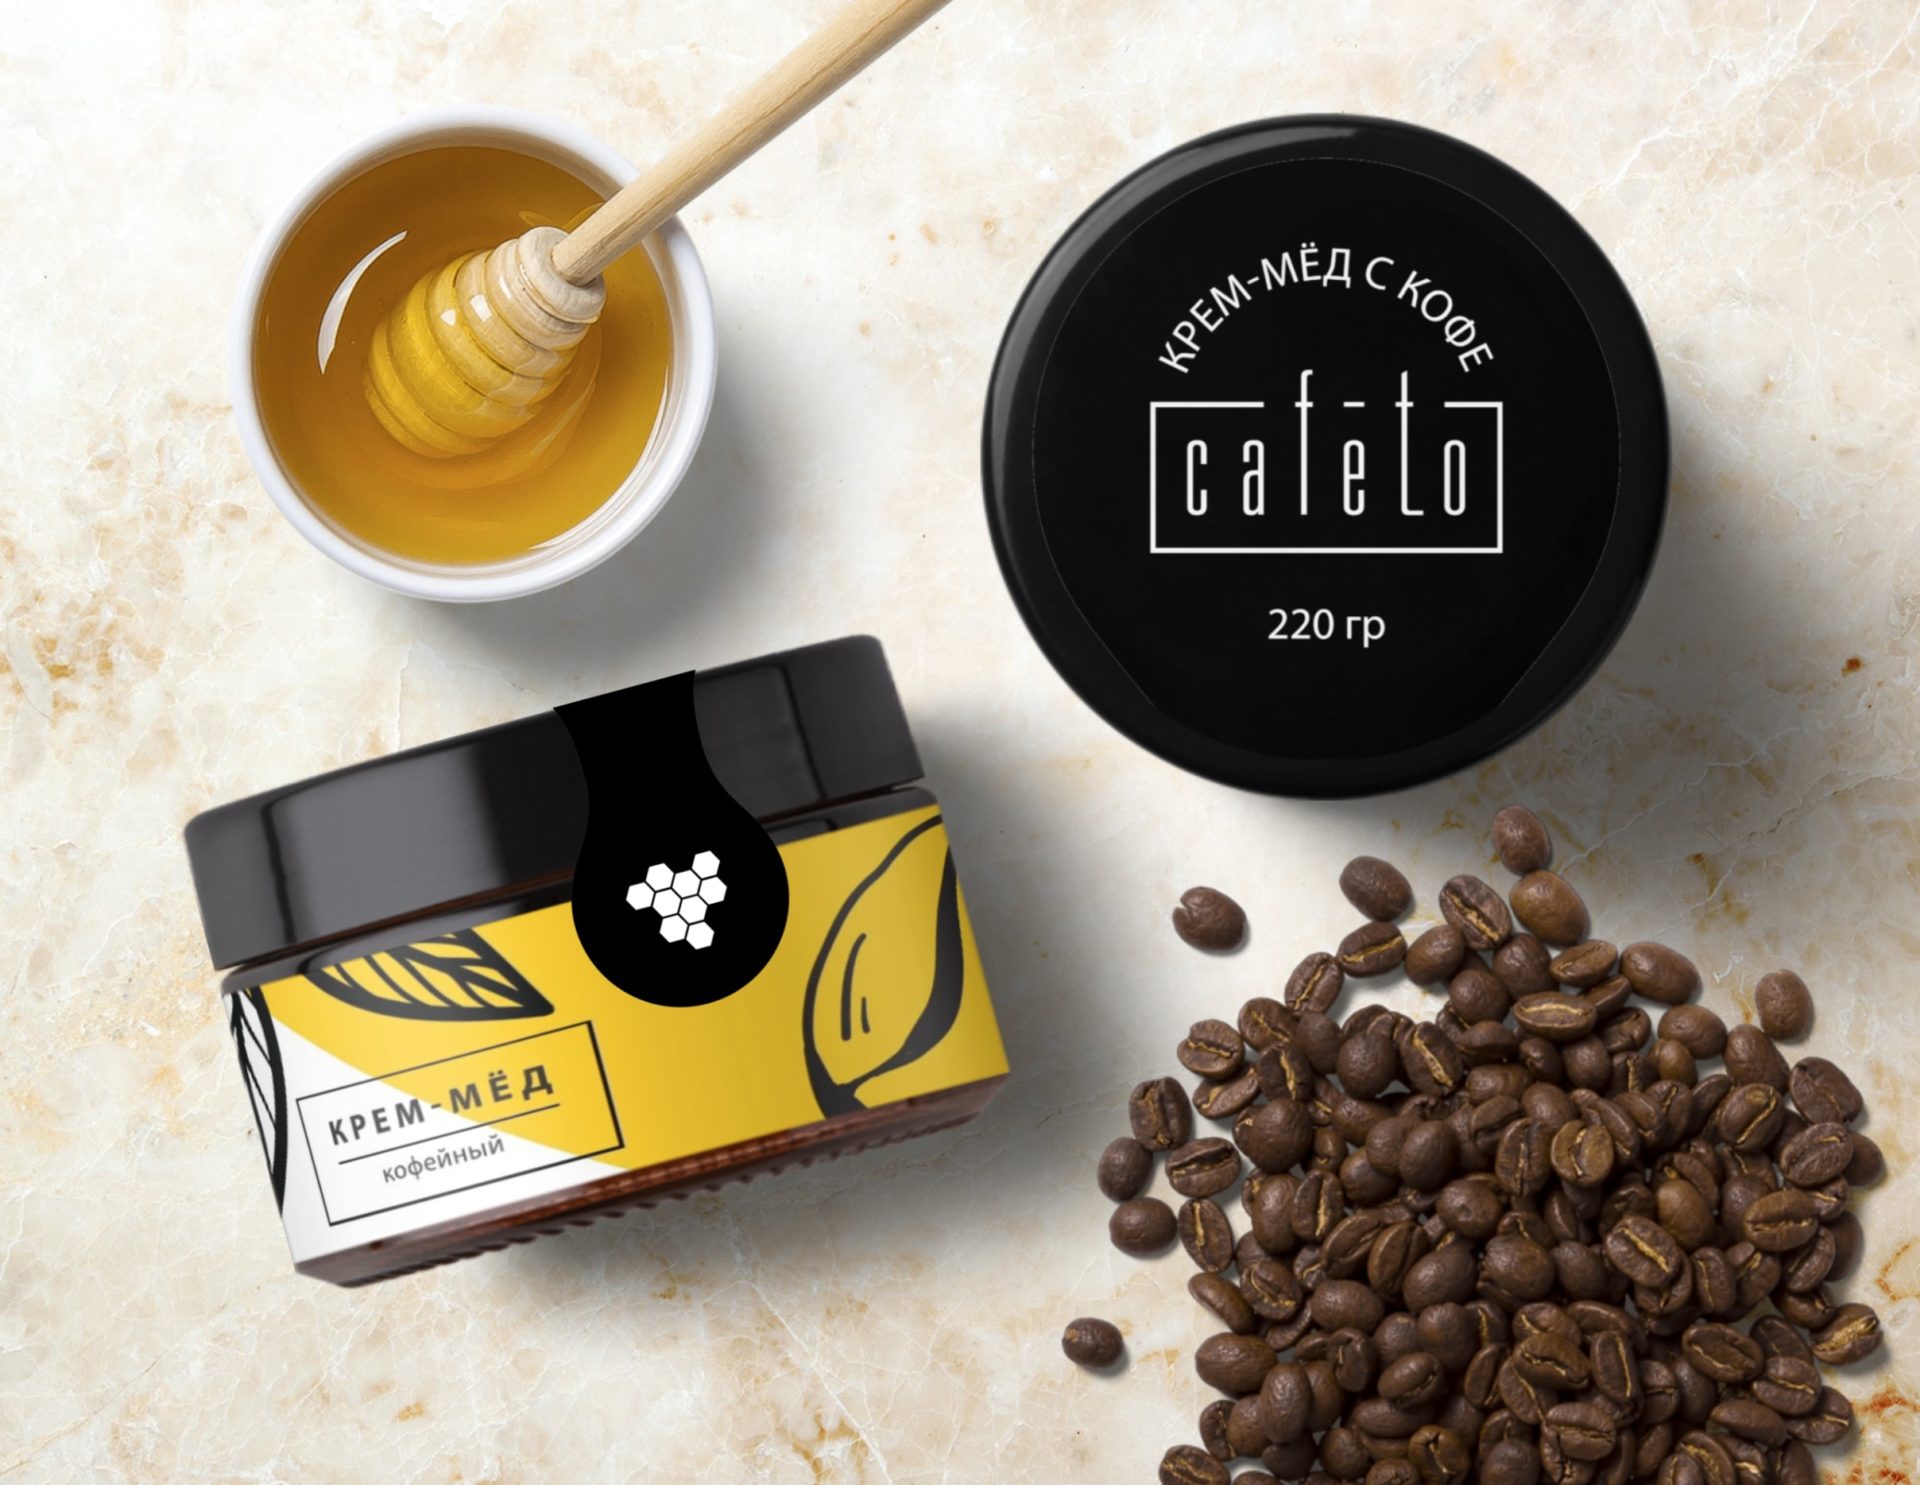 Дизайн упаковки для кофейного крем-меда для компании "Cafeto"